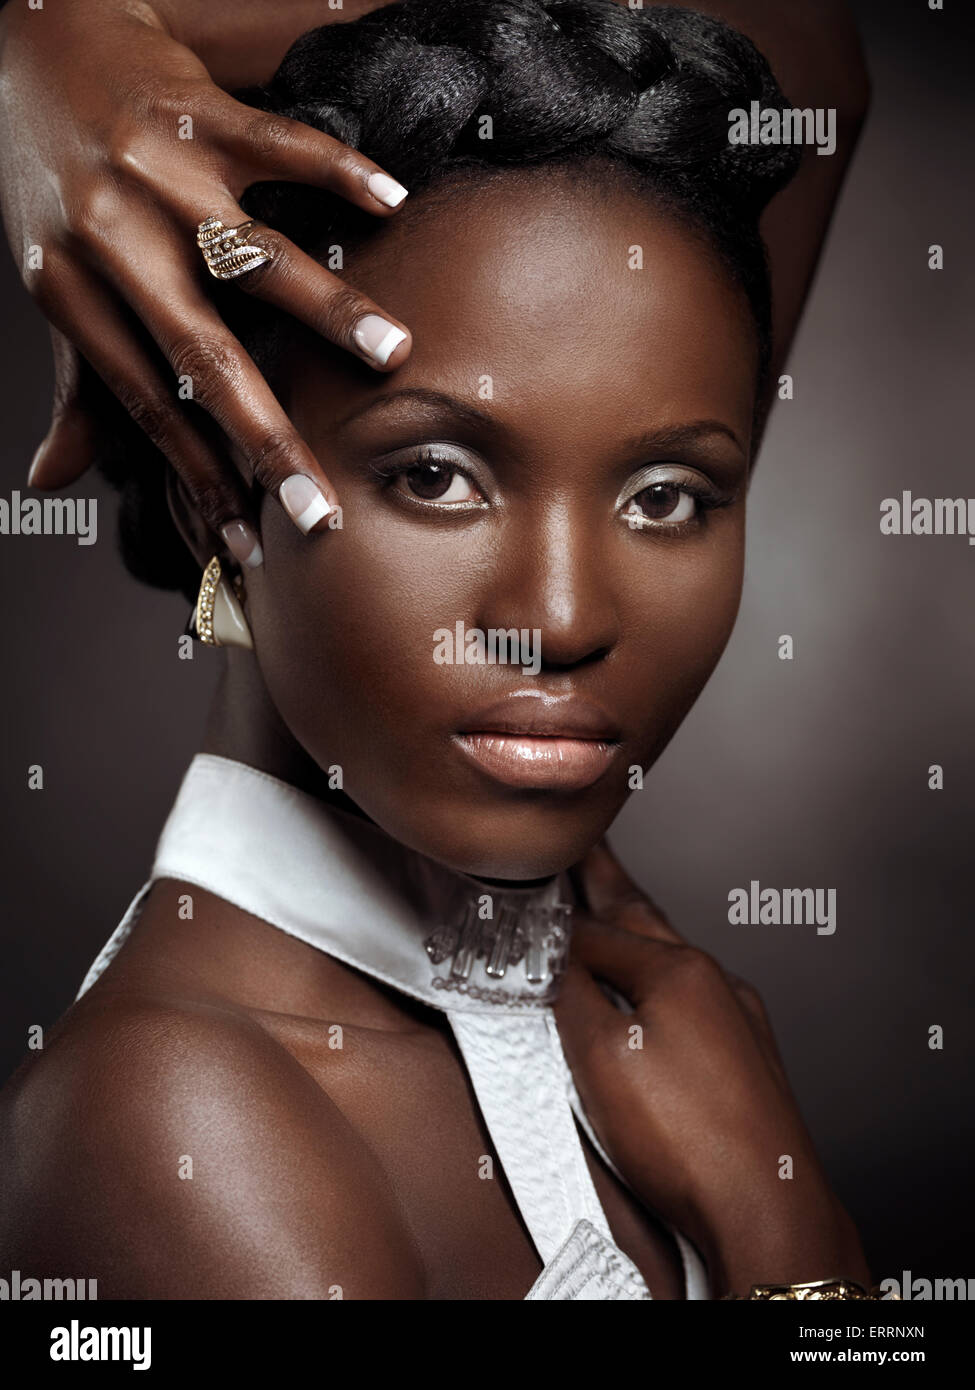 Lizenz und Drucke bei MaximImages.com - ausdrucksstarkes künstlerisches Porträt eines schönen schwarzen afroamerikanischen Frauengesichts Stockfoto